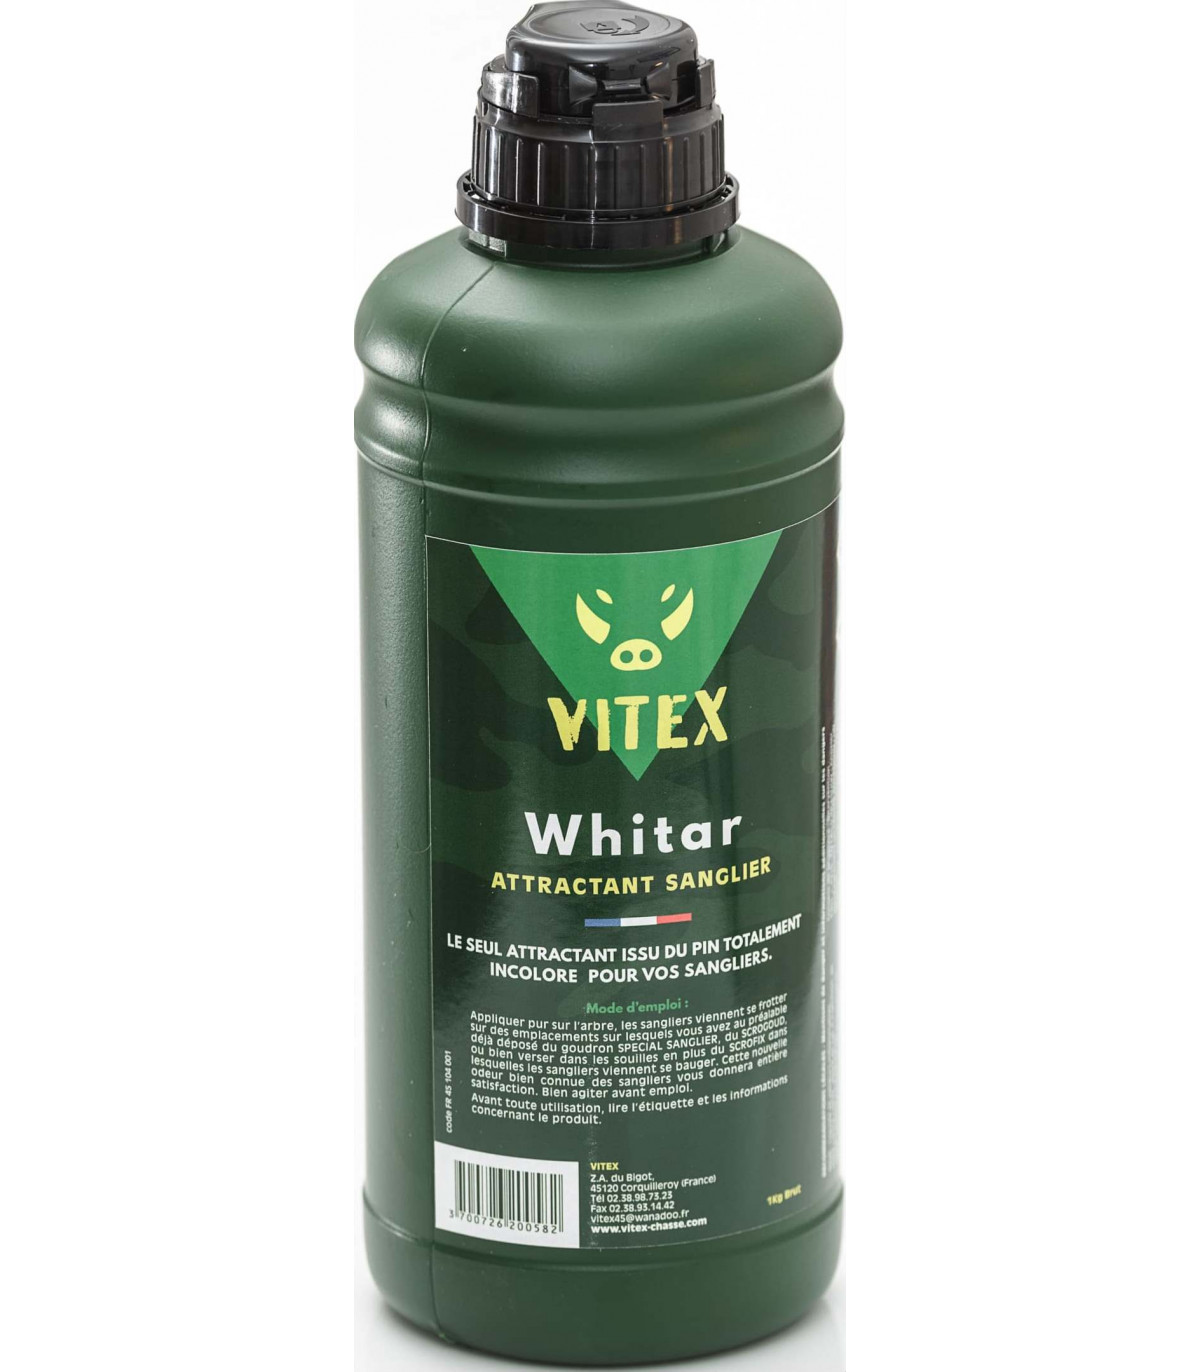 WHITAR SUPER ATTRACTANT - VITEX